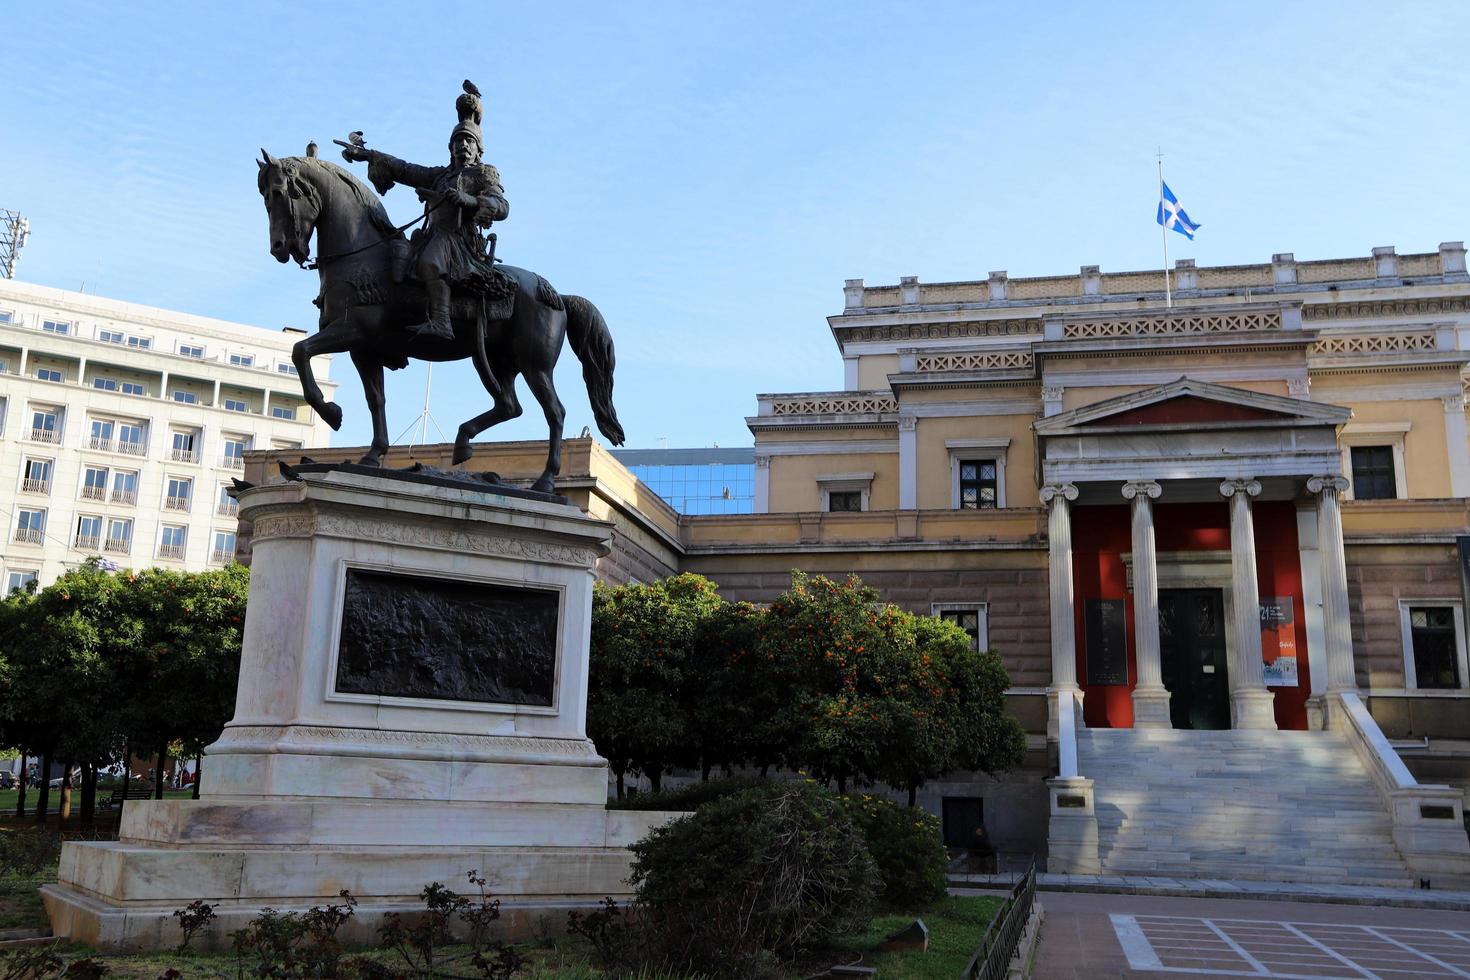 3 april 2022 . Athene is de hoofdstad van het moderne Griekenland en het centrum van de oude Griekse beschaving. foto